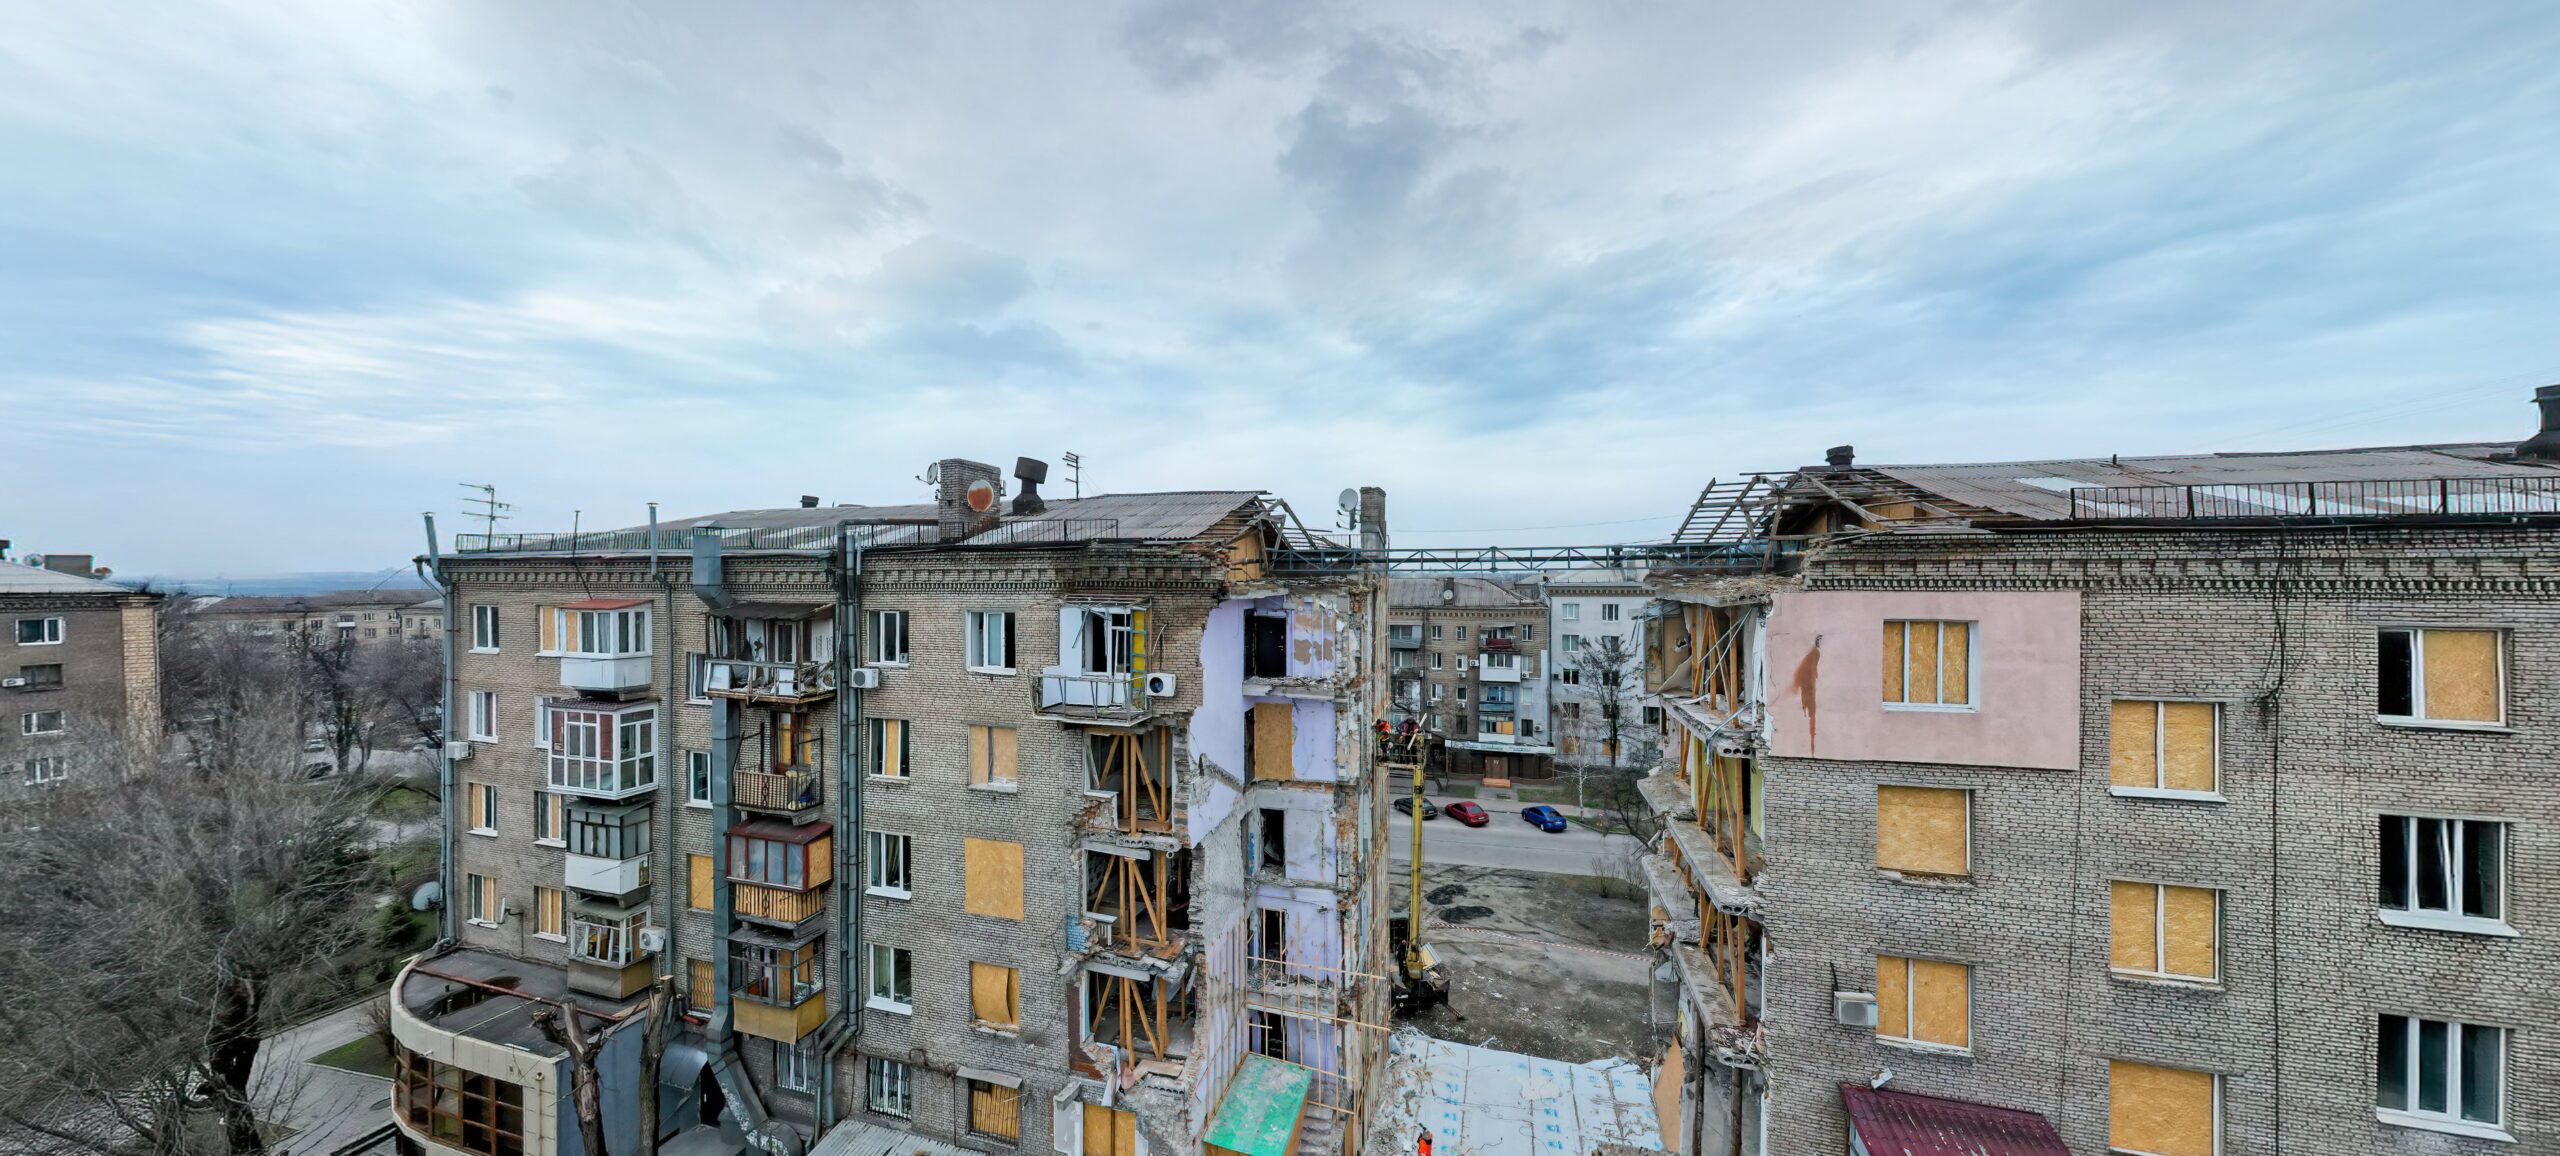 Разрушенные дома в Запорожье стали участниками проекта о прилетах